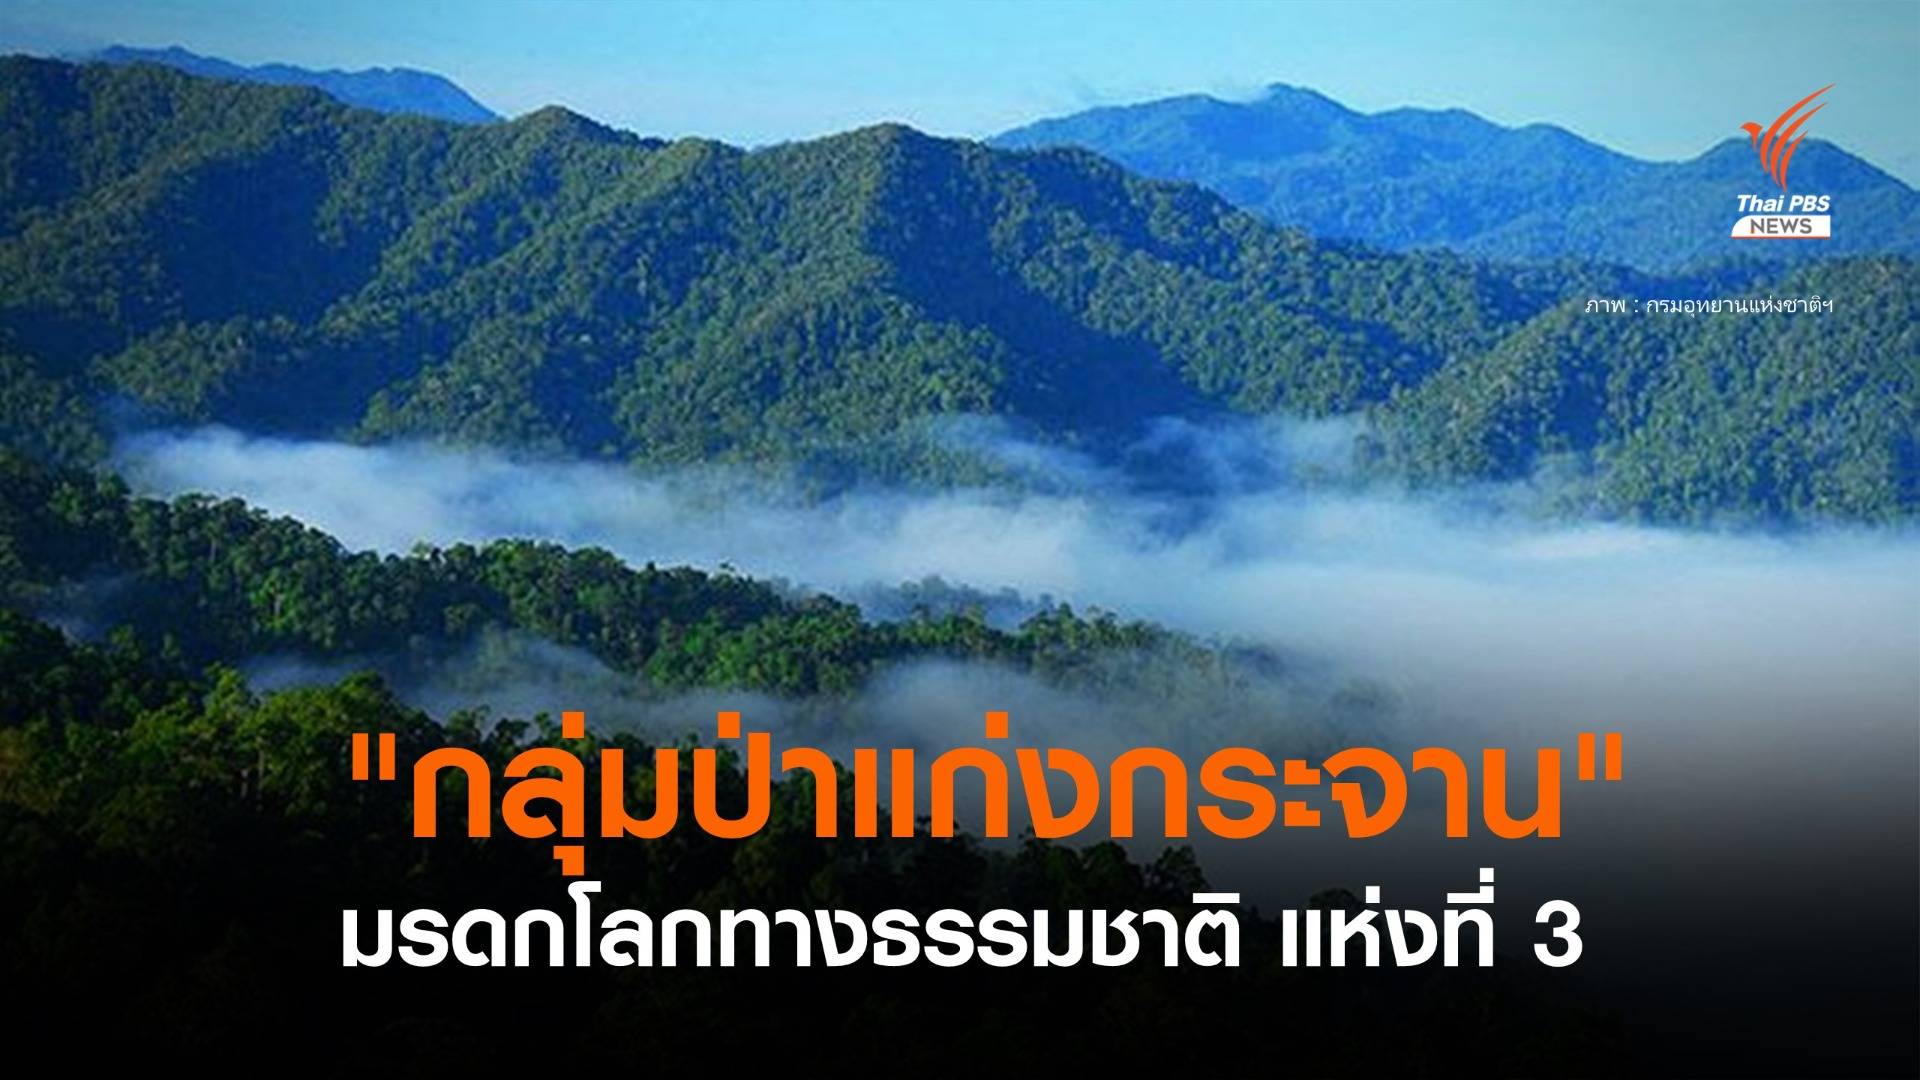 ข่าวดี! "กลุ่มป่าแก่งกระจาน" ขึ้นทะเบียนเป็น "มรดกโลกทางธรรมชาติ" แห่งที่ 3 ของไทยแล้ว